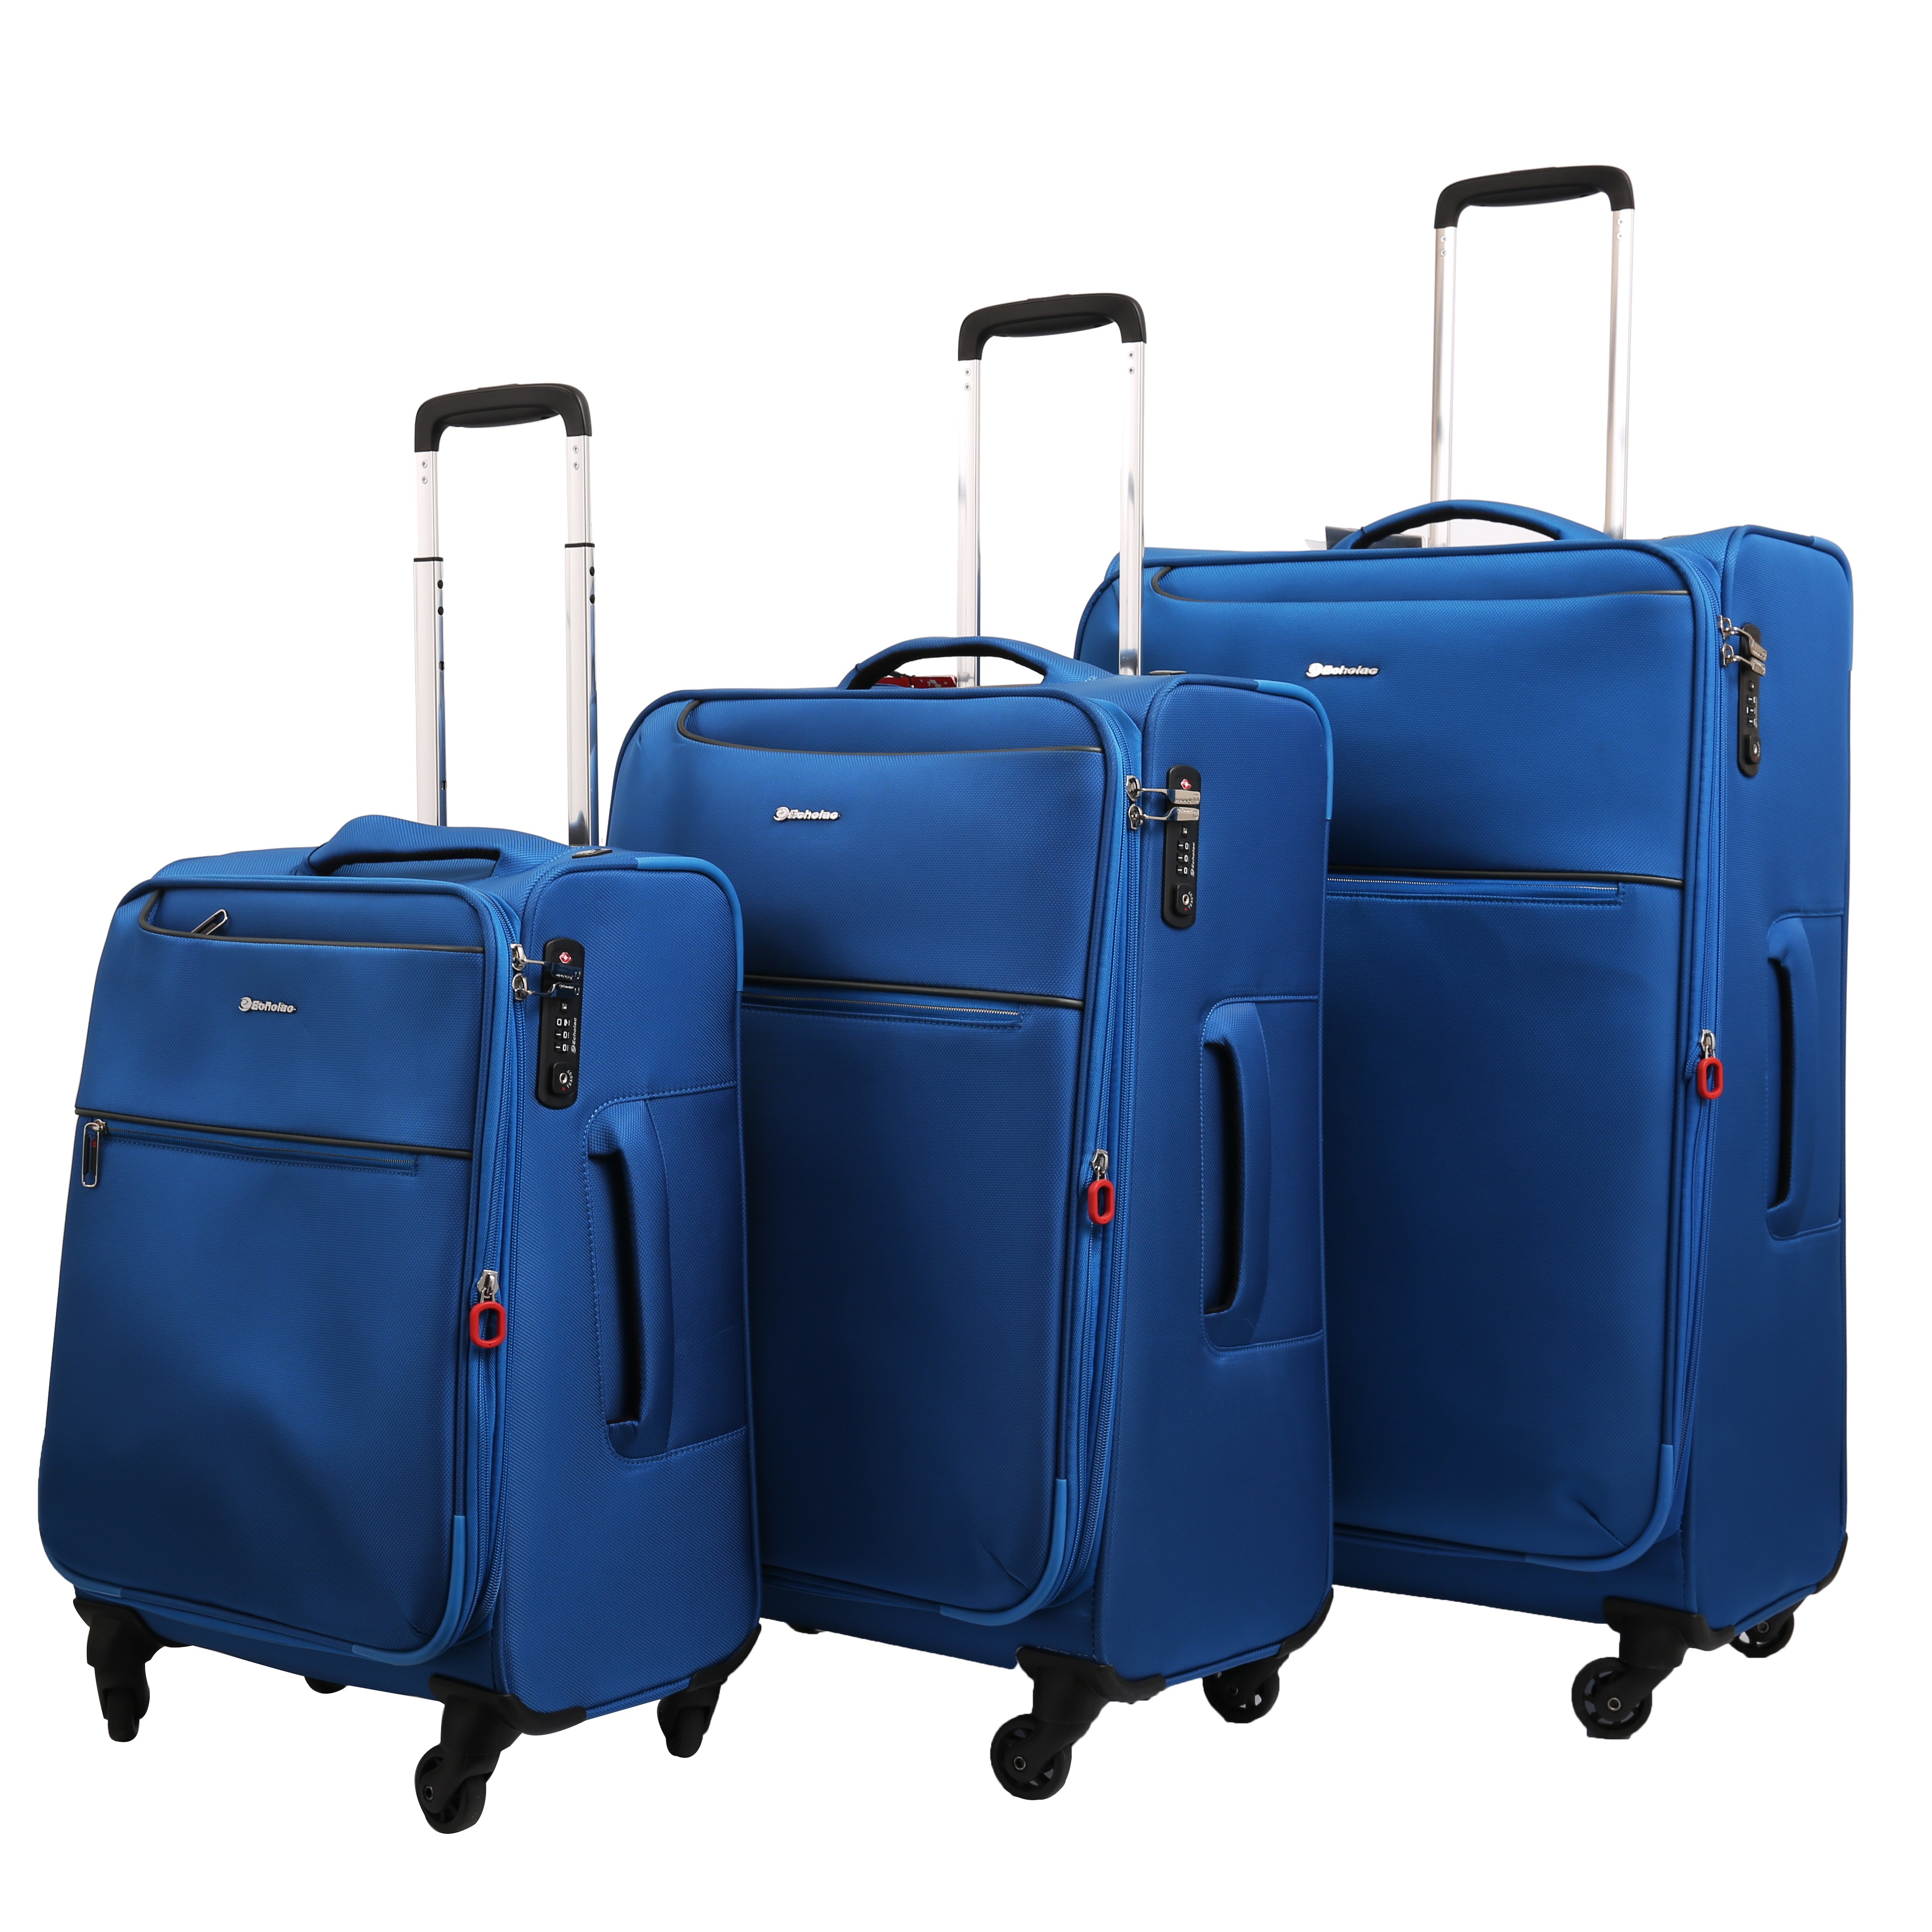 مجموعه سه عددی چمدان اکولاک مدل Ride